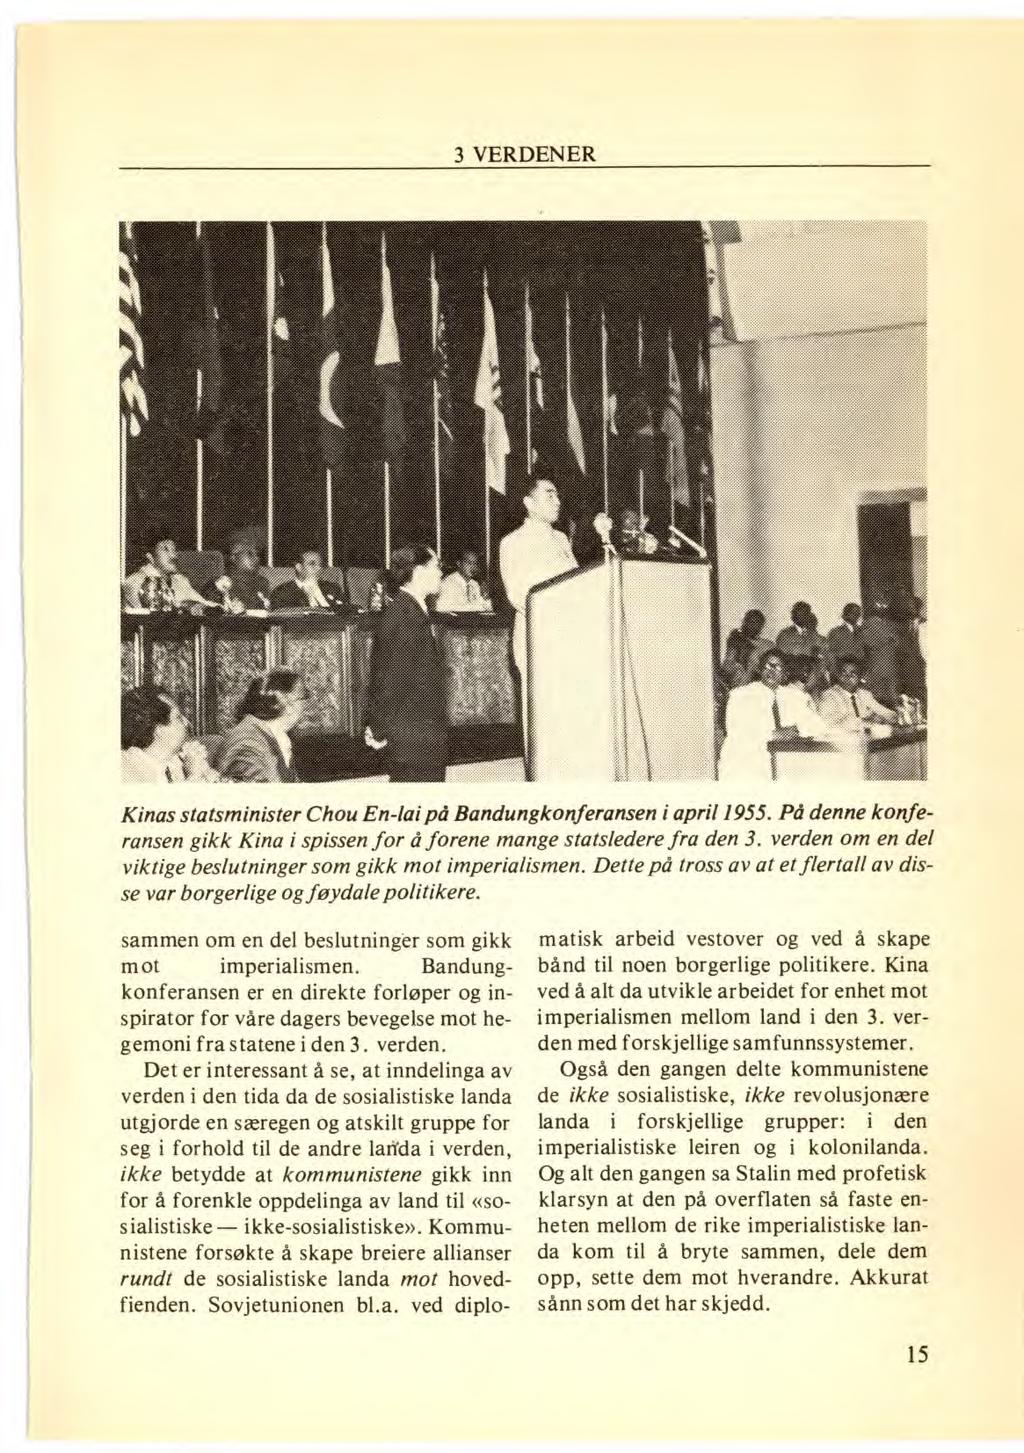 Kinas statsminister Chou En-lai på Bandungkonferansen i april 1955. På denne konferansen gikk Kina i spissen for å forene mange statsledere fra den 3.